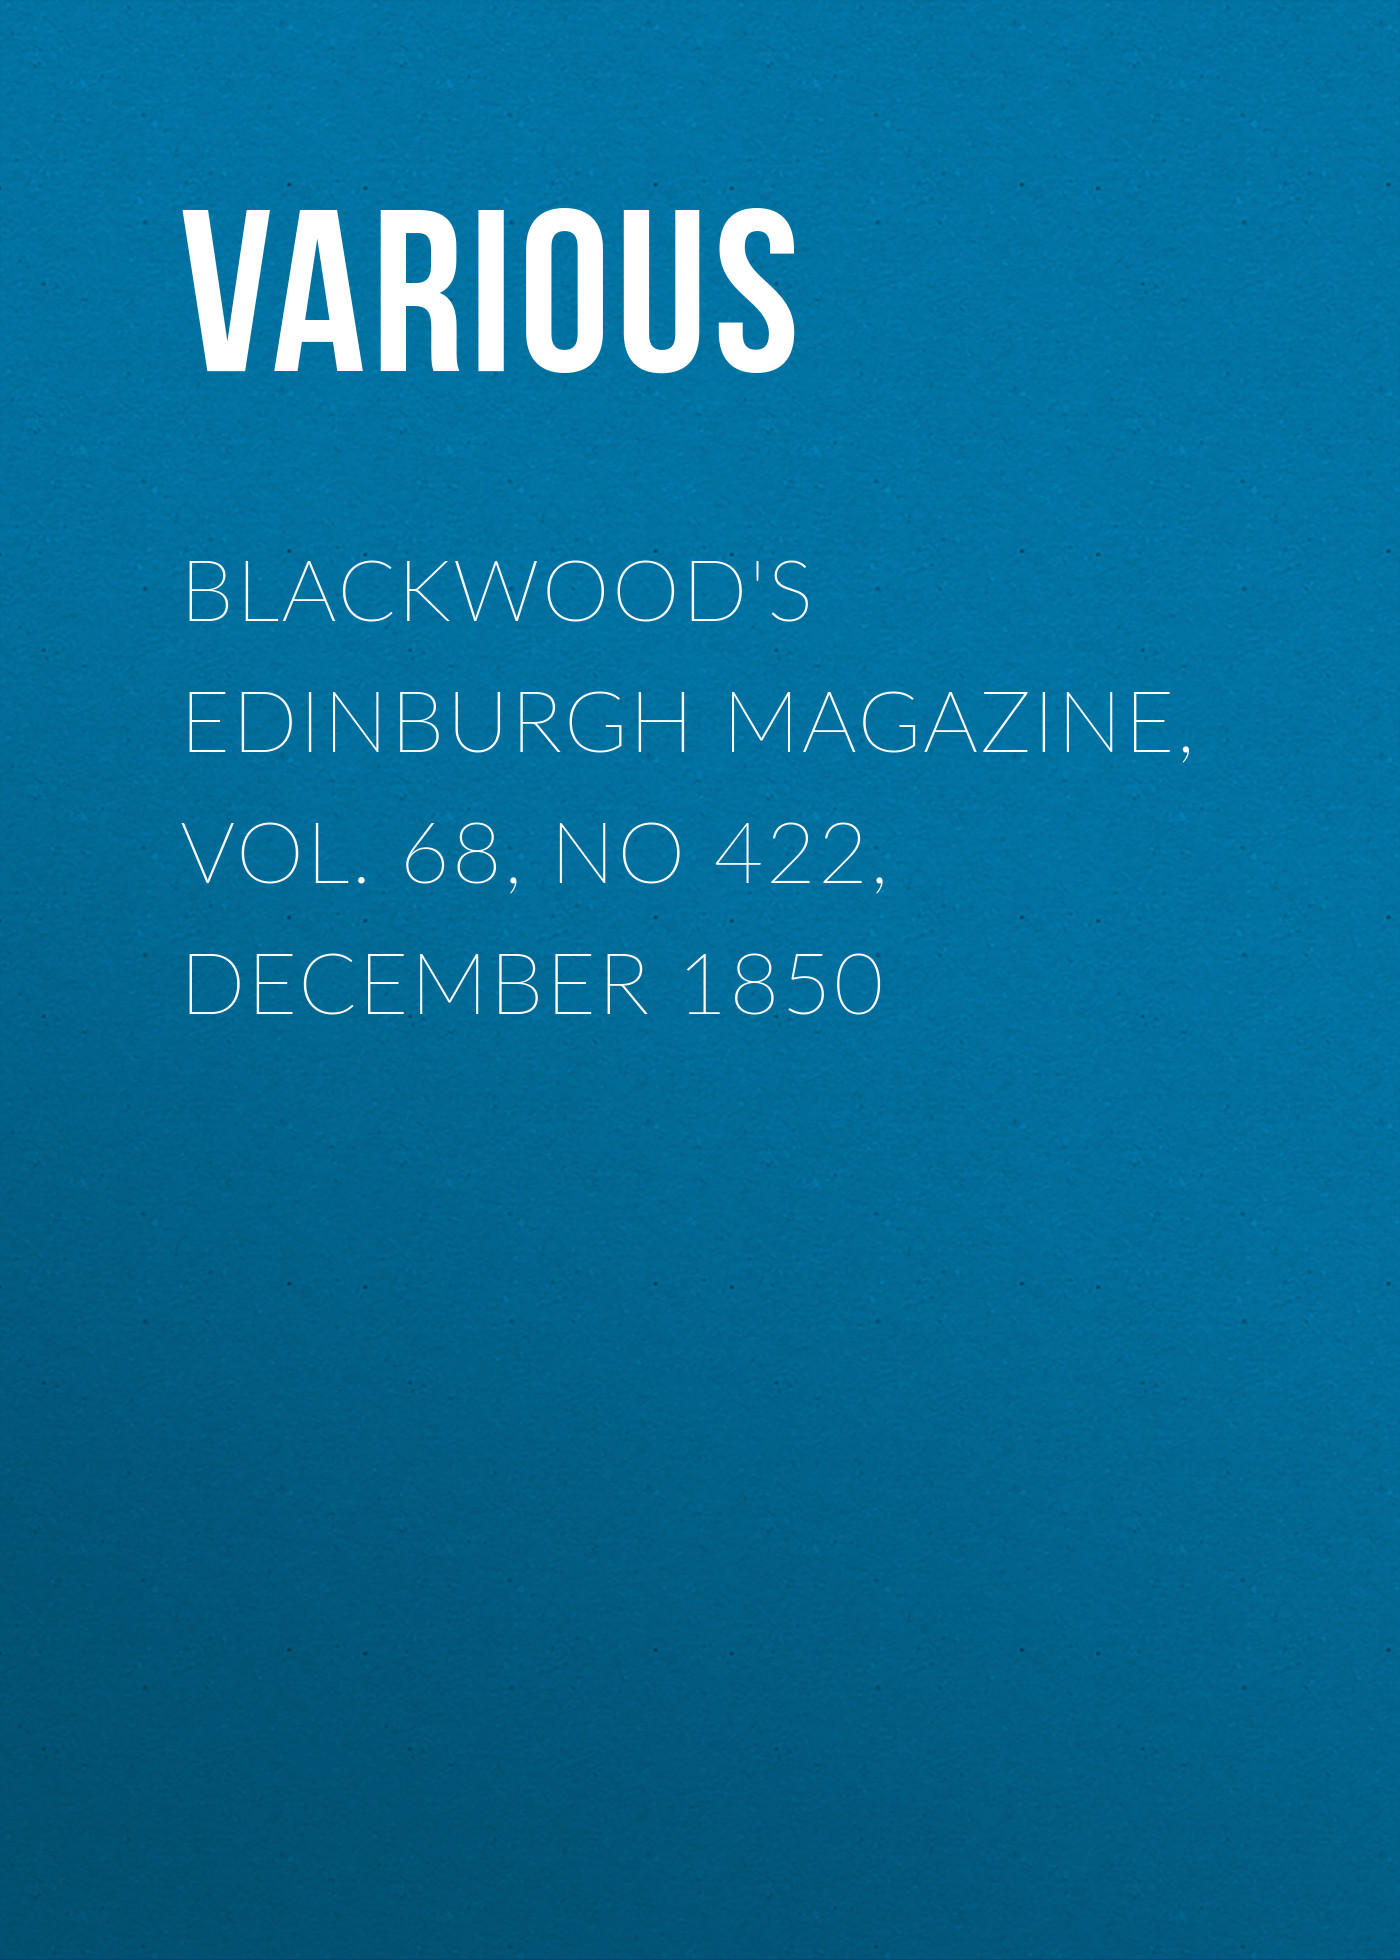 Книга Blackwood's Edinburgh Magazine, Vol. 68, No 422, December 1850 из серии , созданная  Various, может относится к жанру Журналы, Зарубежная образовательная литература, Книги о Путешествиях. Стоимость электронной книги Blackwood's Edinburgh Magazine, Vol. 68, No 422, December 1850 с идентификатором 25568687 составляет 0 руб.